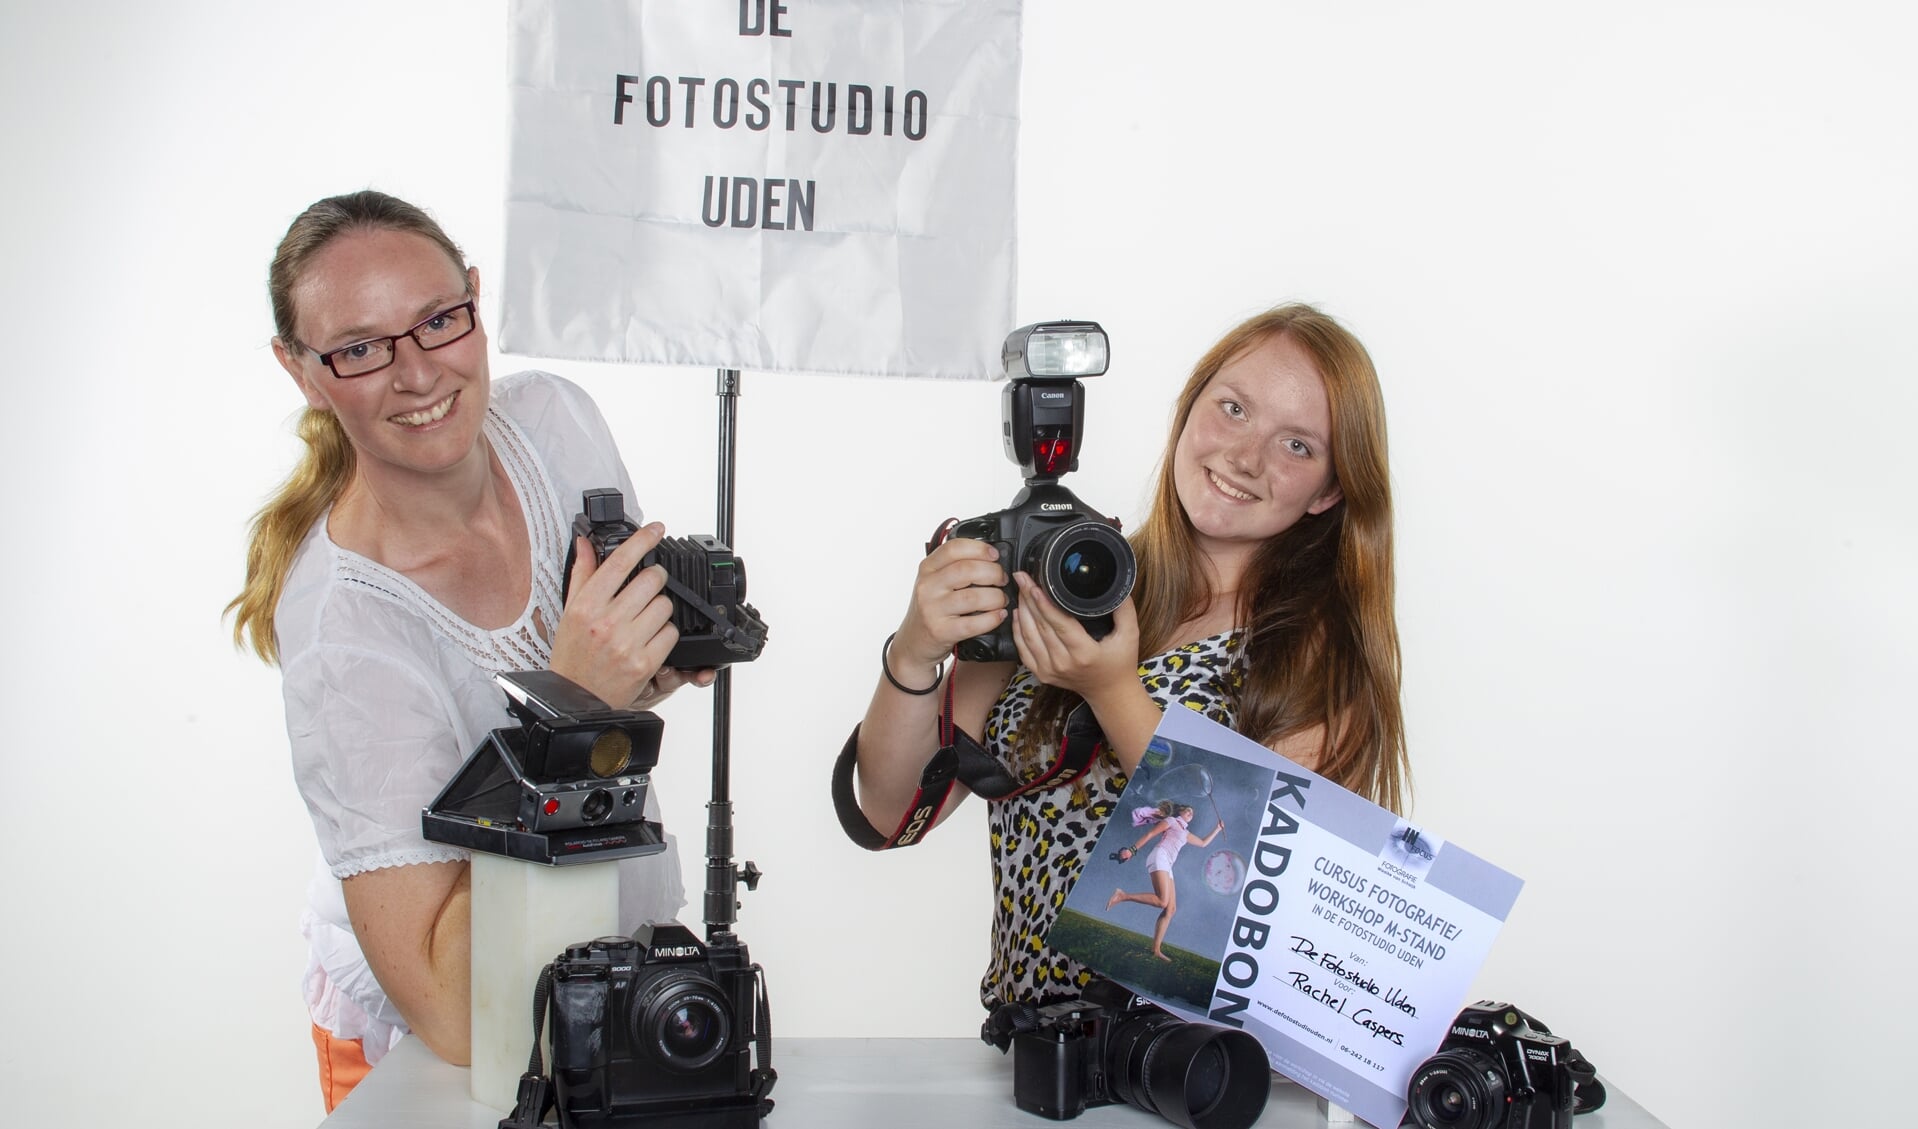 Maaike van Schaijk van De Fotostudio Uden met Rachel Caspers die een cursus fotografie wint